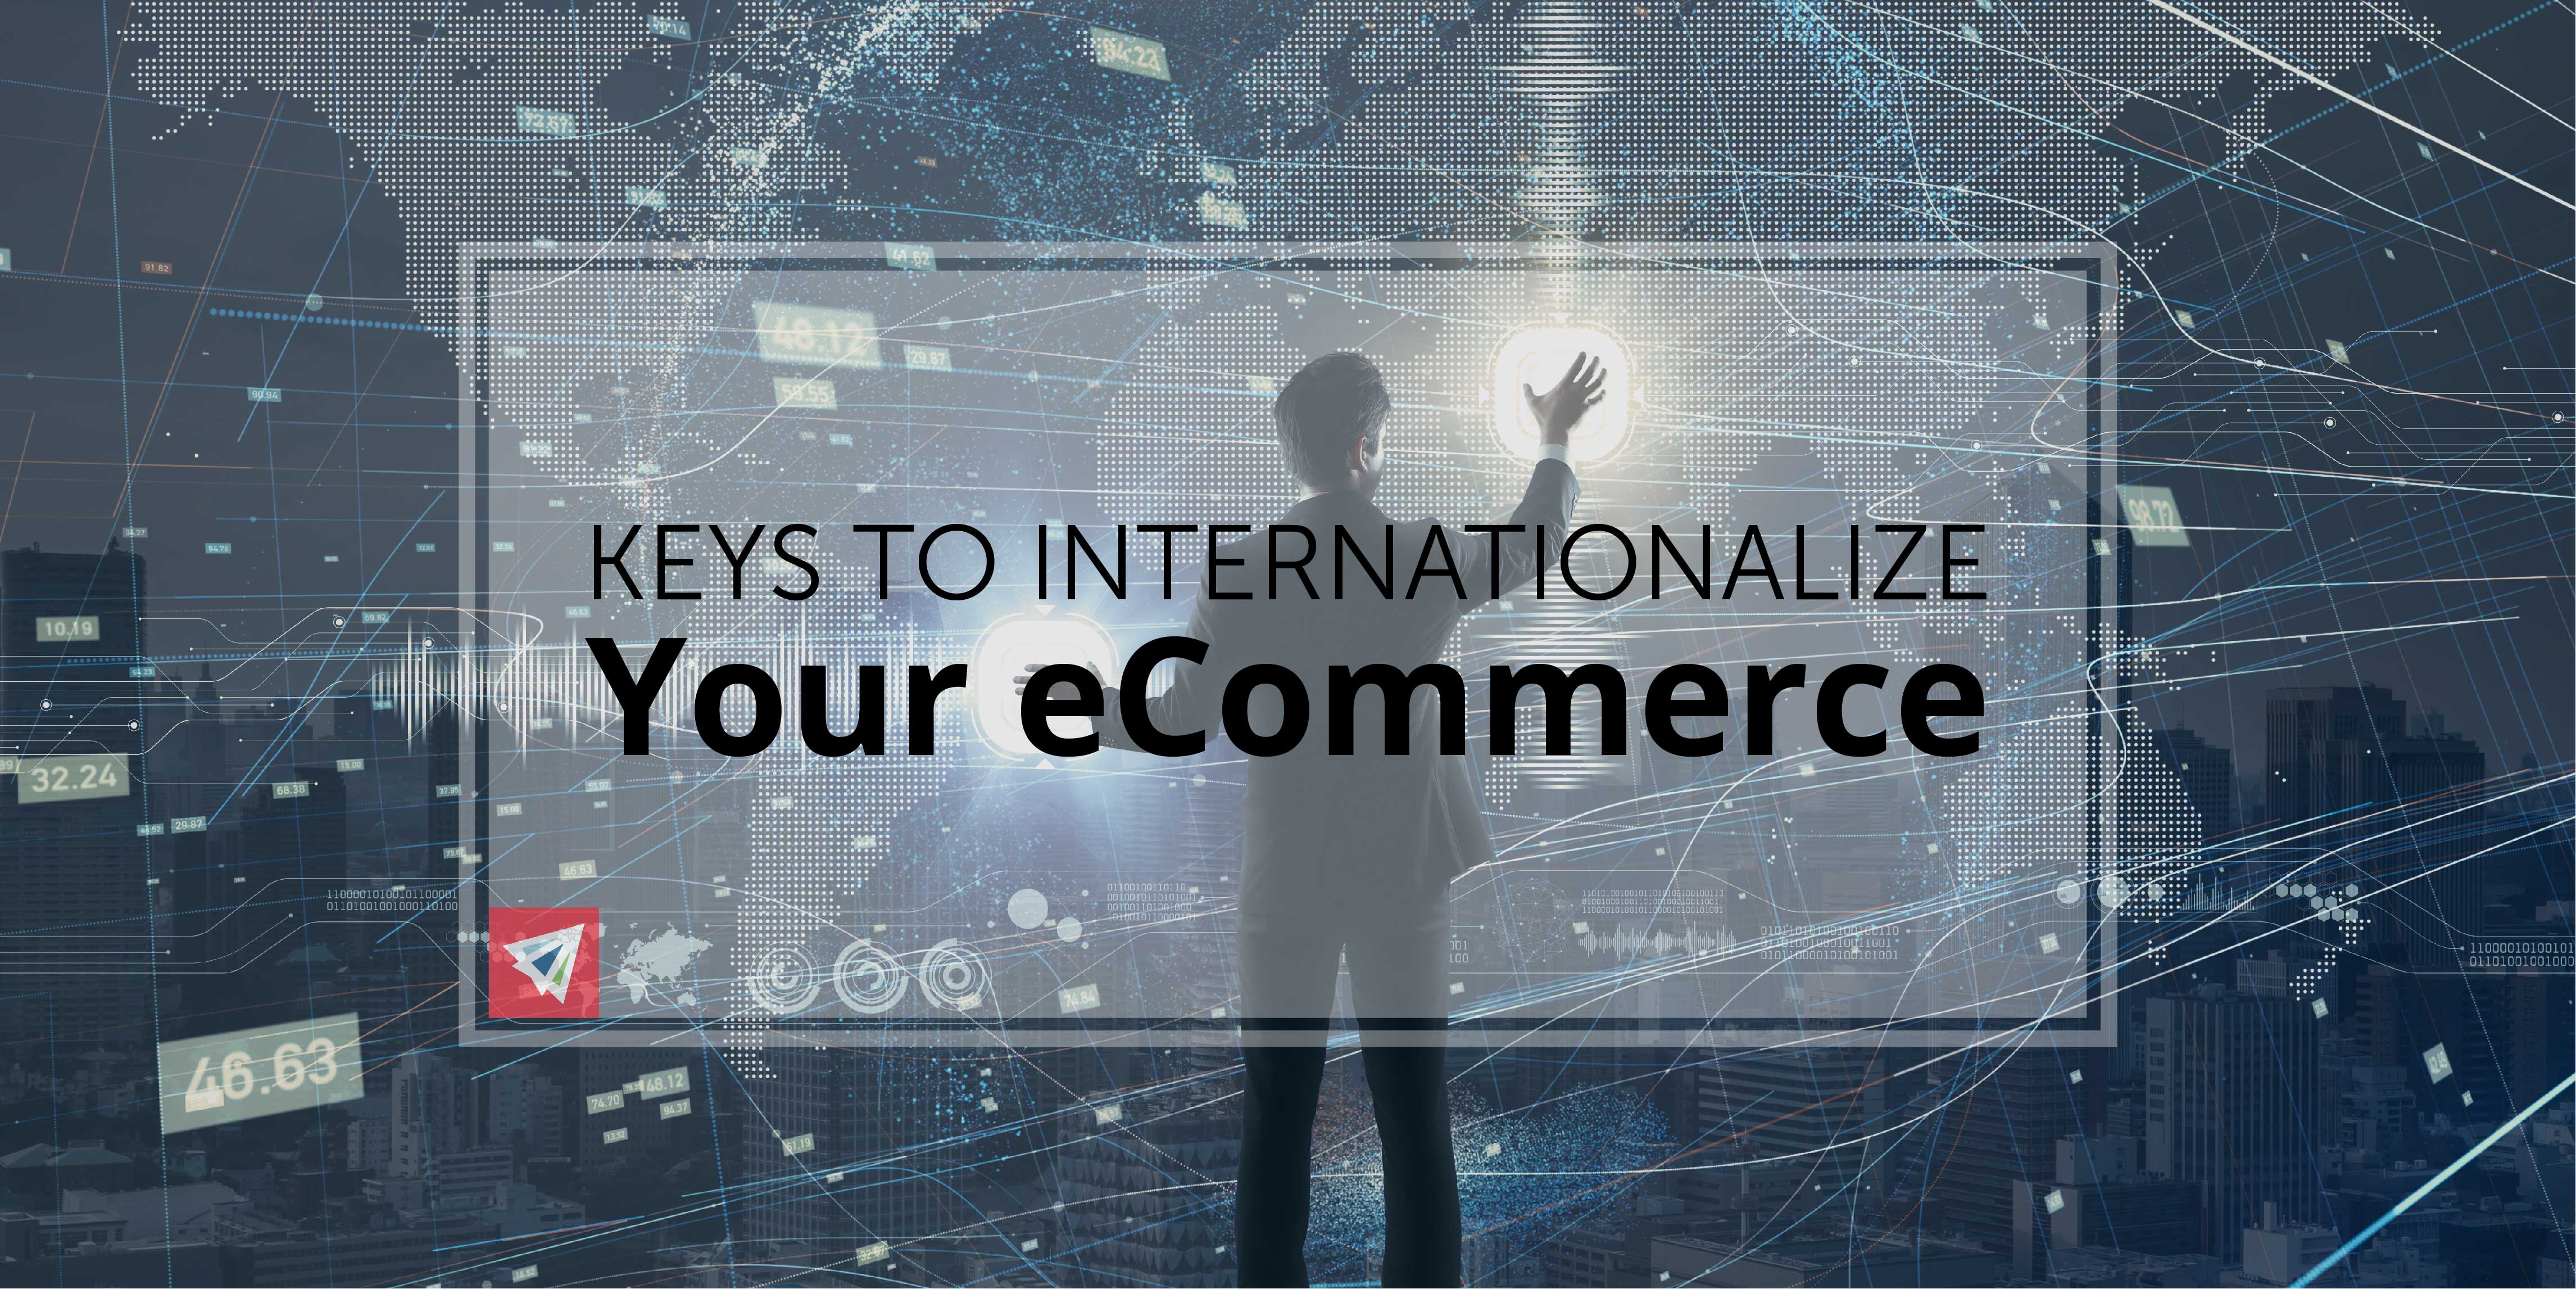 Keys to Internationalize Your eCommerce